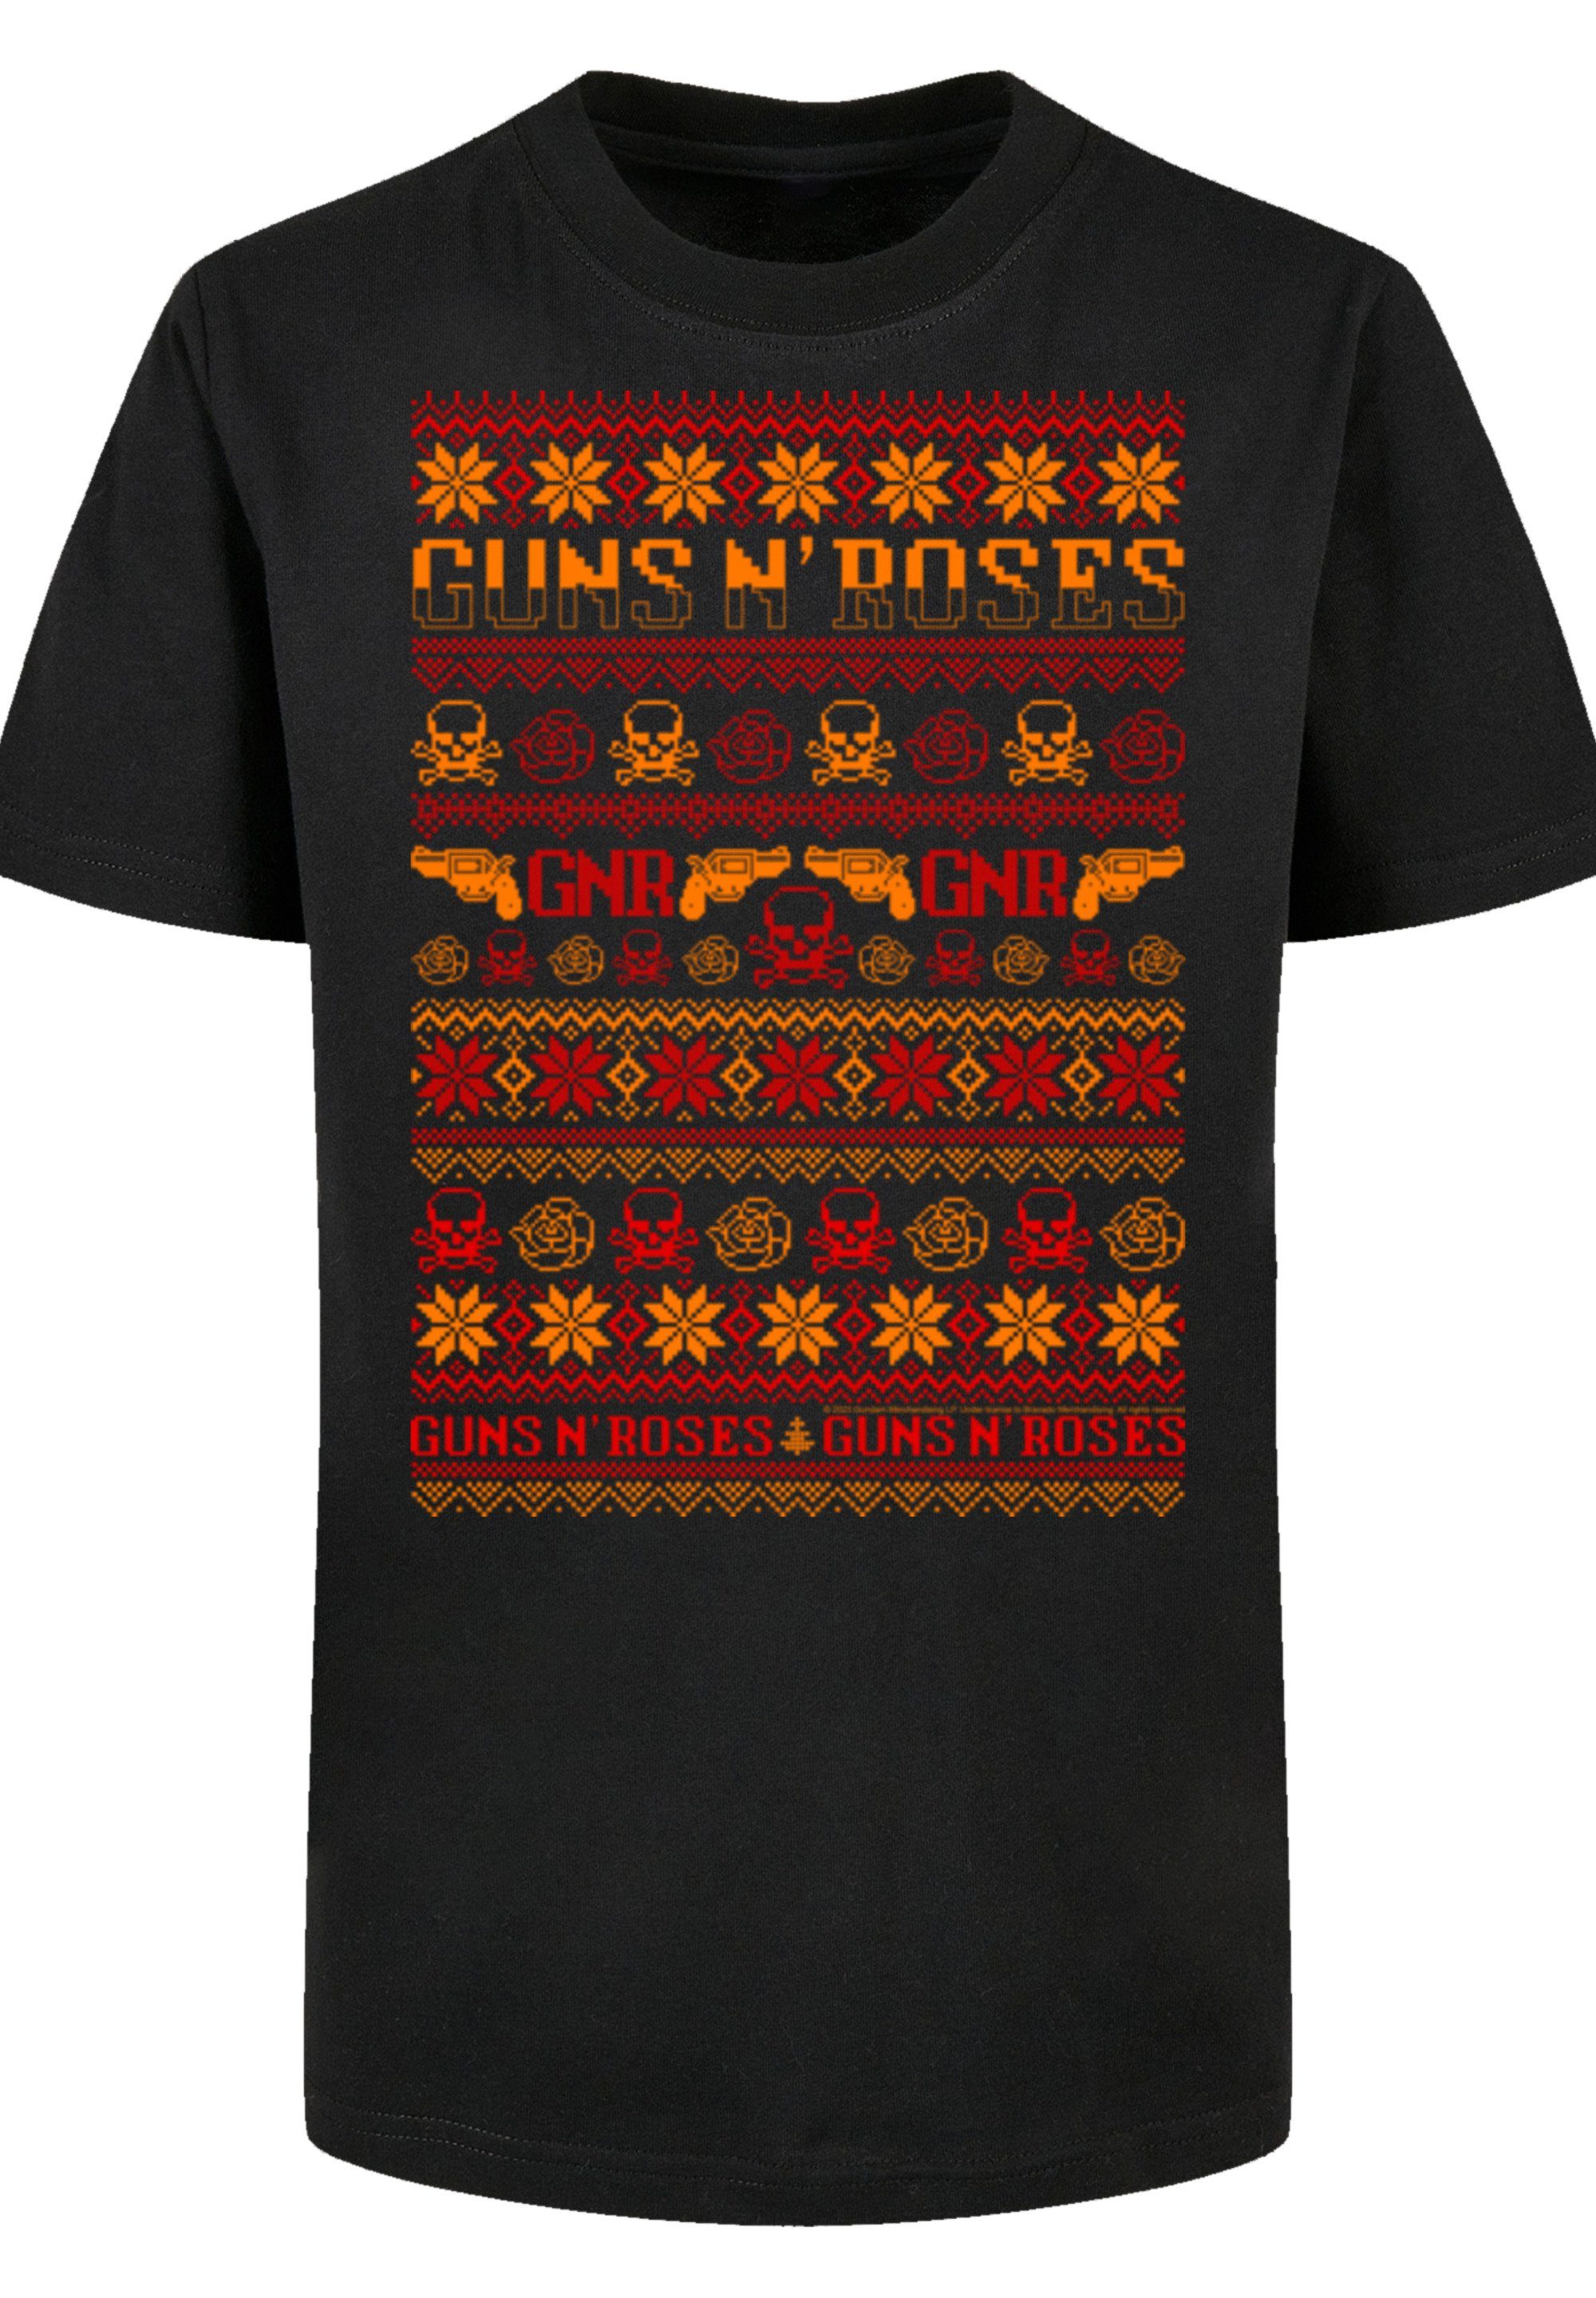 F4NT4STIC T-Shirt Guns n' Roses Weihnachten Christmas Musik,Band,Logo schwarz